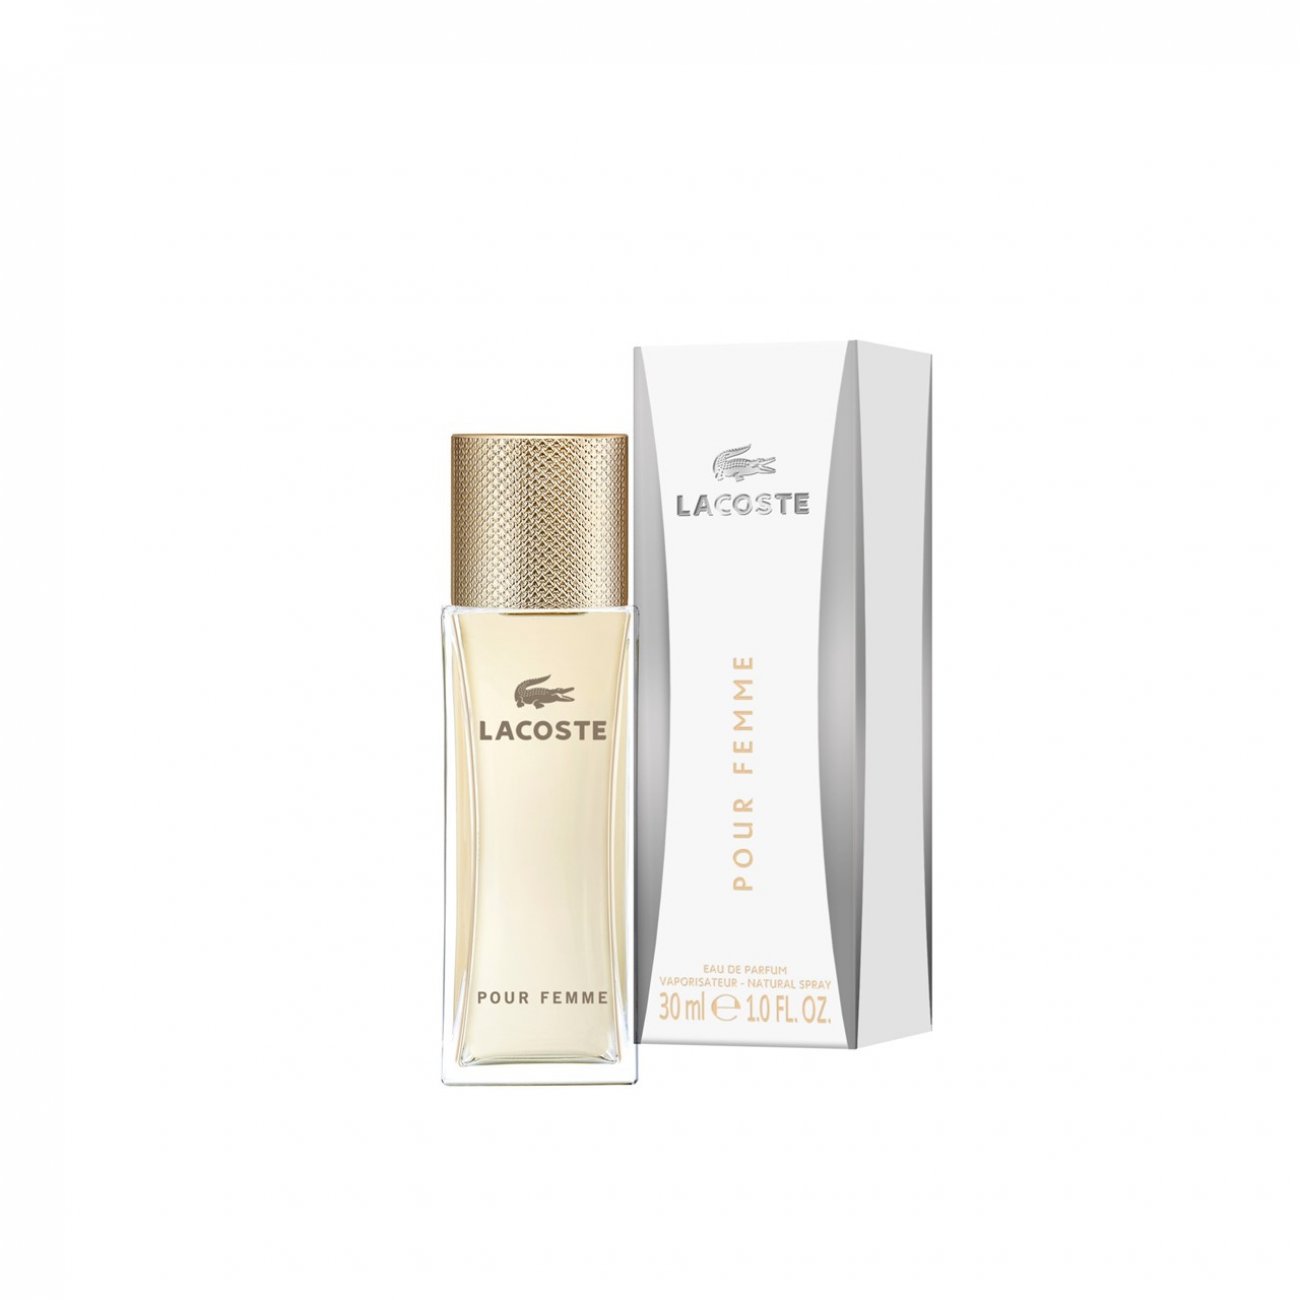 Buy Lacoste Pour Femme Eau Parfum · USA